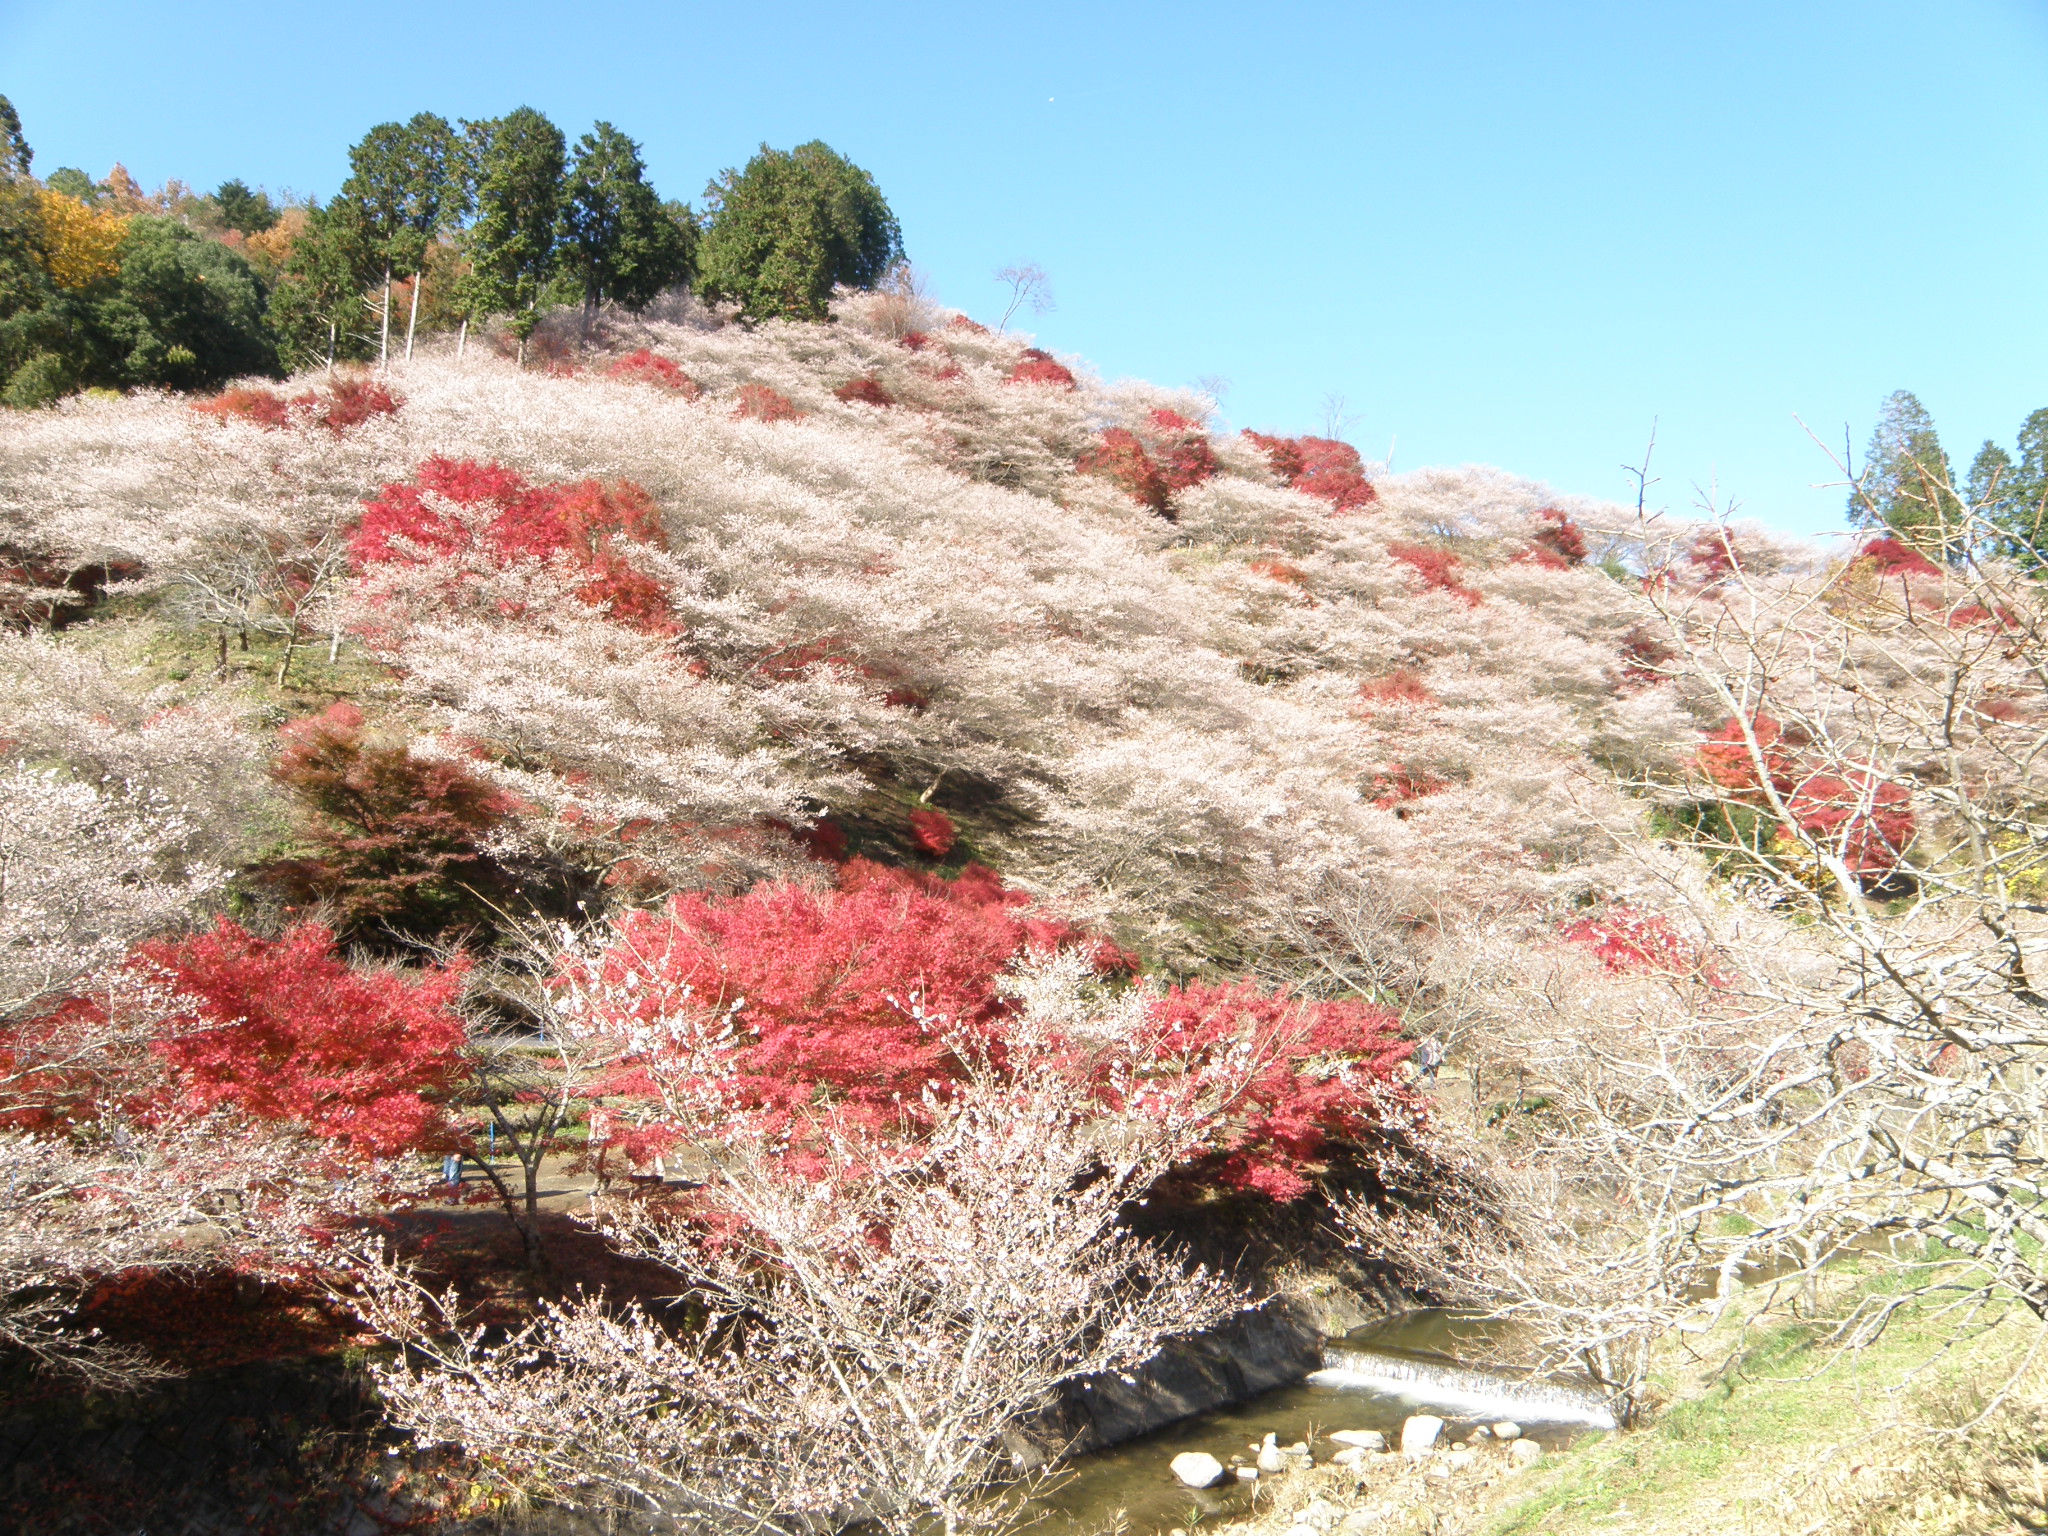 11 1 紅葉シーズン本格化 桜との奇跡のコラボ 超名所ライトアップなど 一生に一度は行きたい秋の絶景5選 Nagoya ナゴヤドット